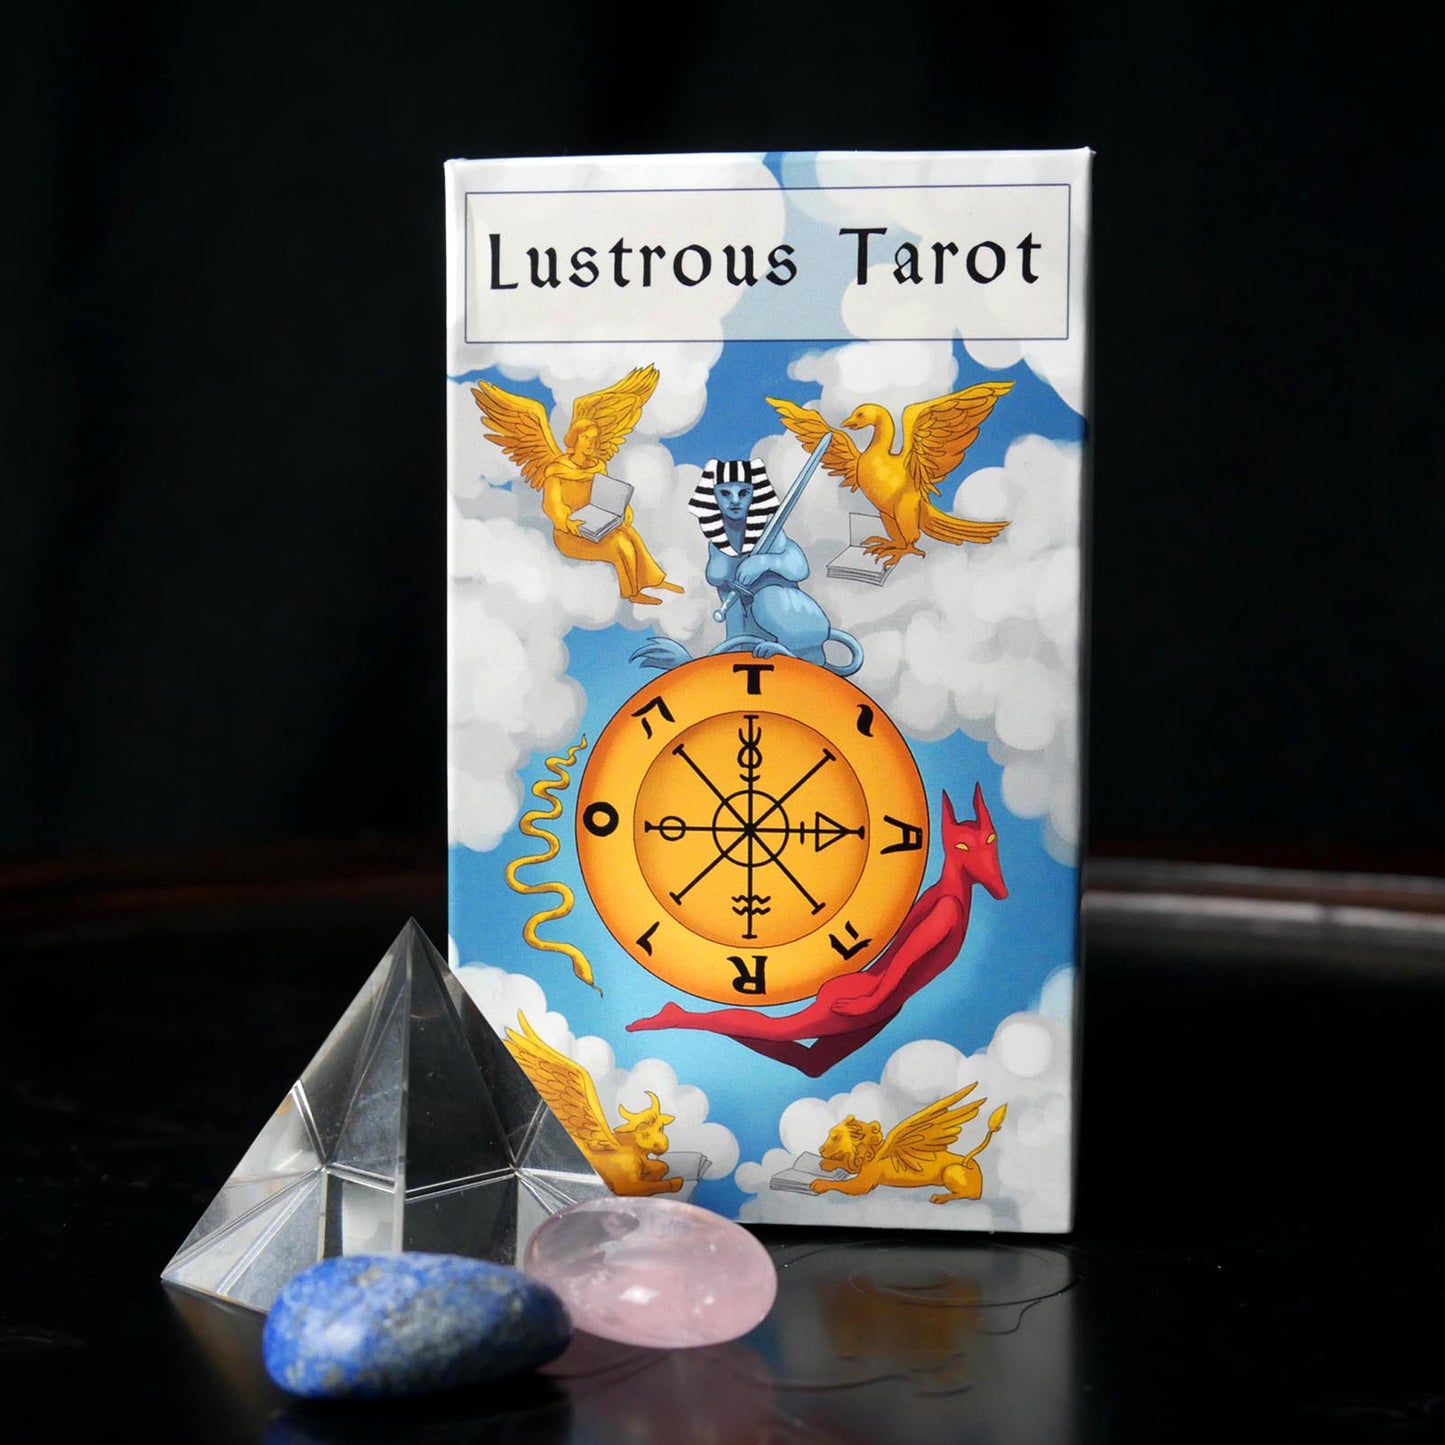 Lustrous Tarot